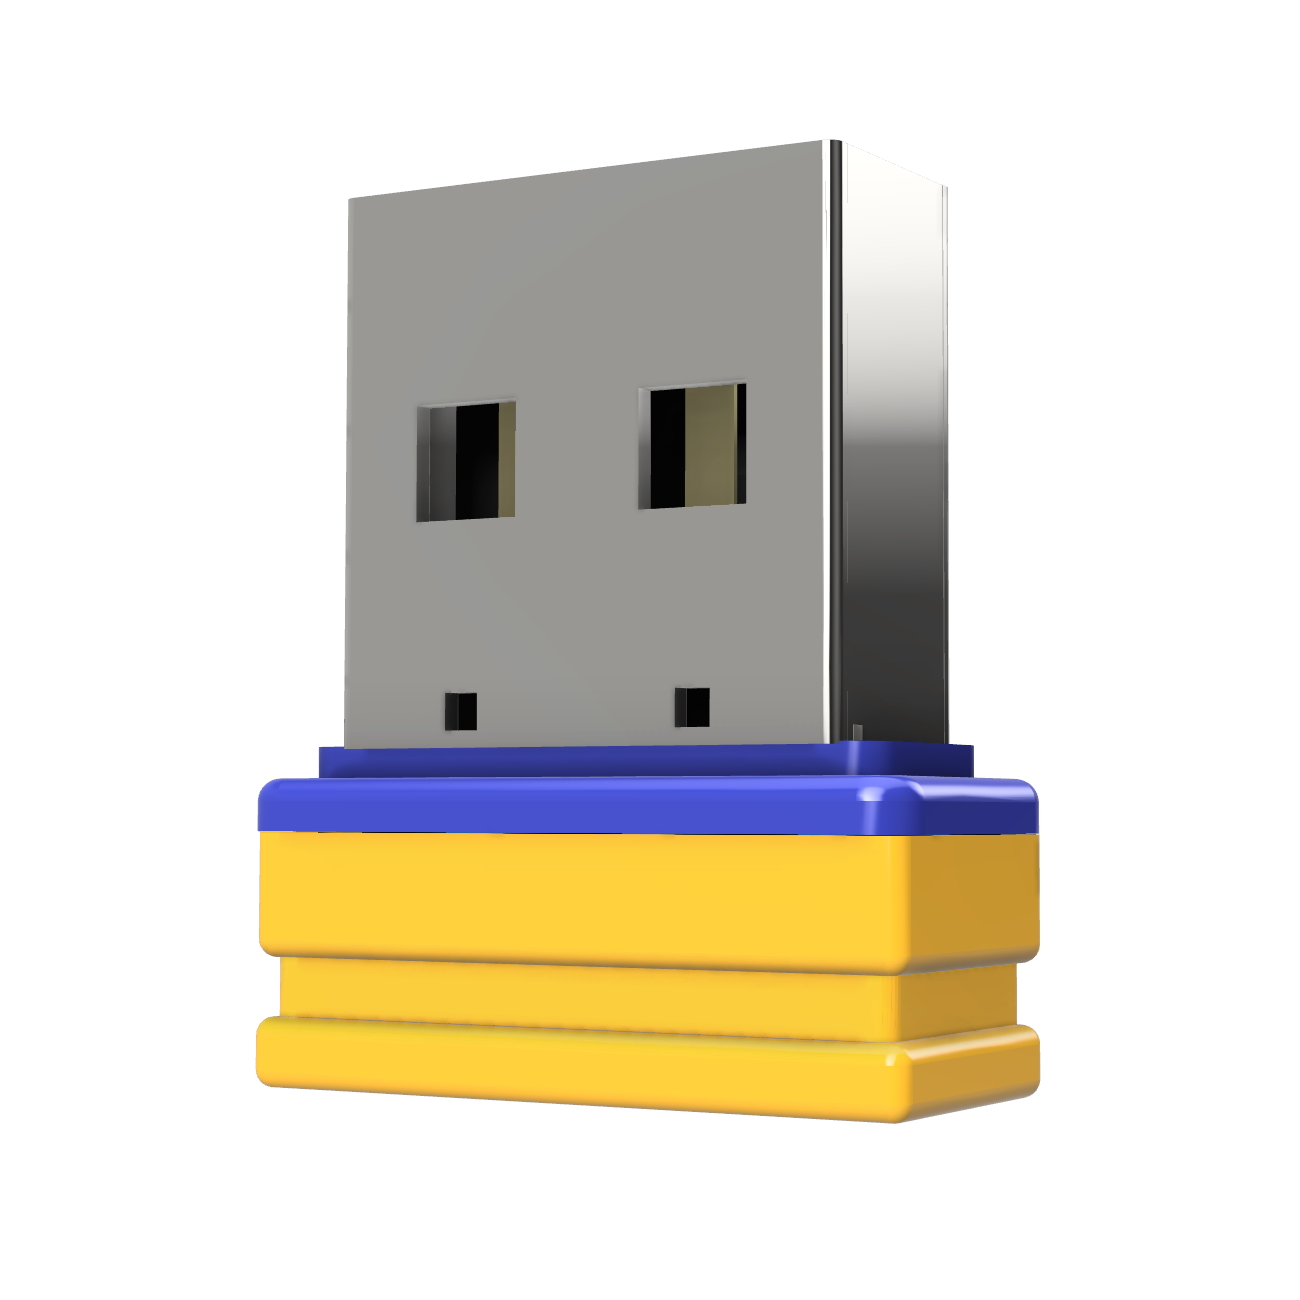 USB GERMANY ®ULTRA Mini GB) P1 32 (Gelb/Blau, USB-Stick